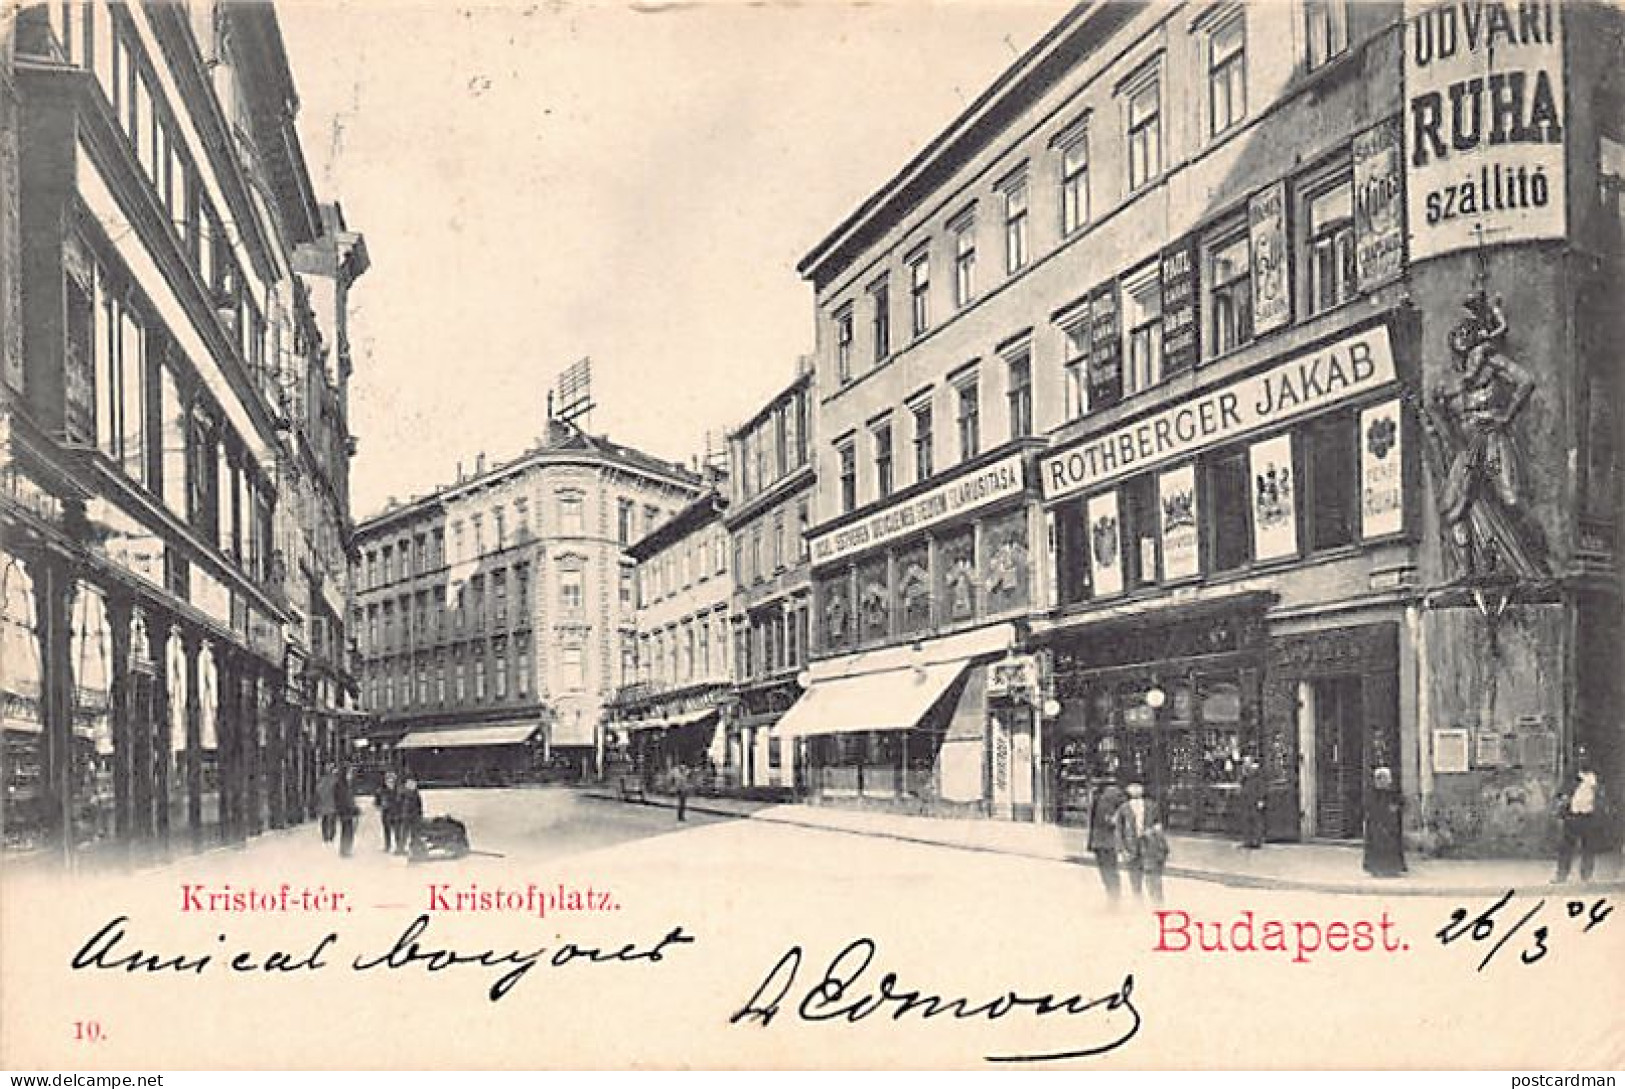 Hungary - BUDAPEST - Rothberger Jakab Shop - Kristof-tér. - Hongrie